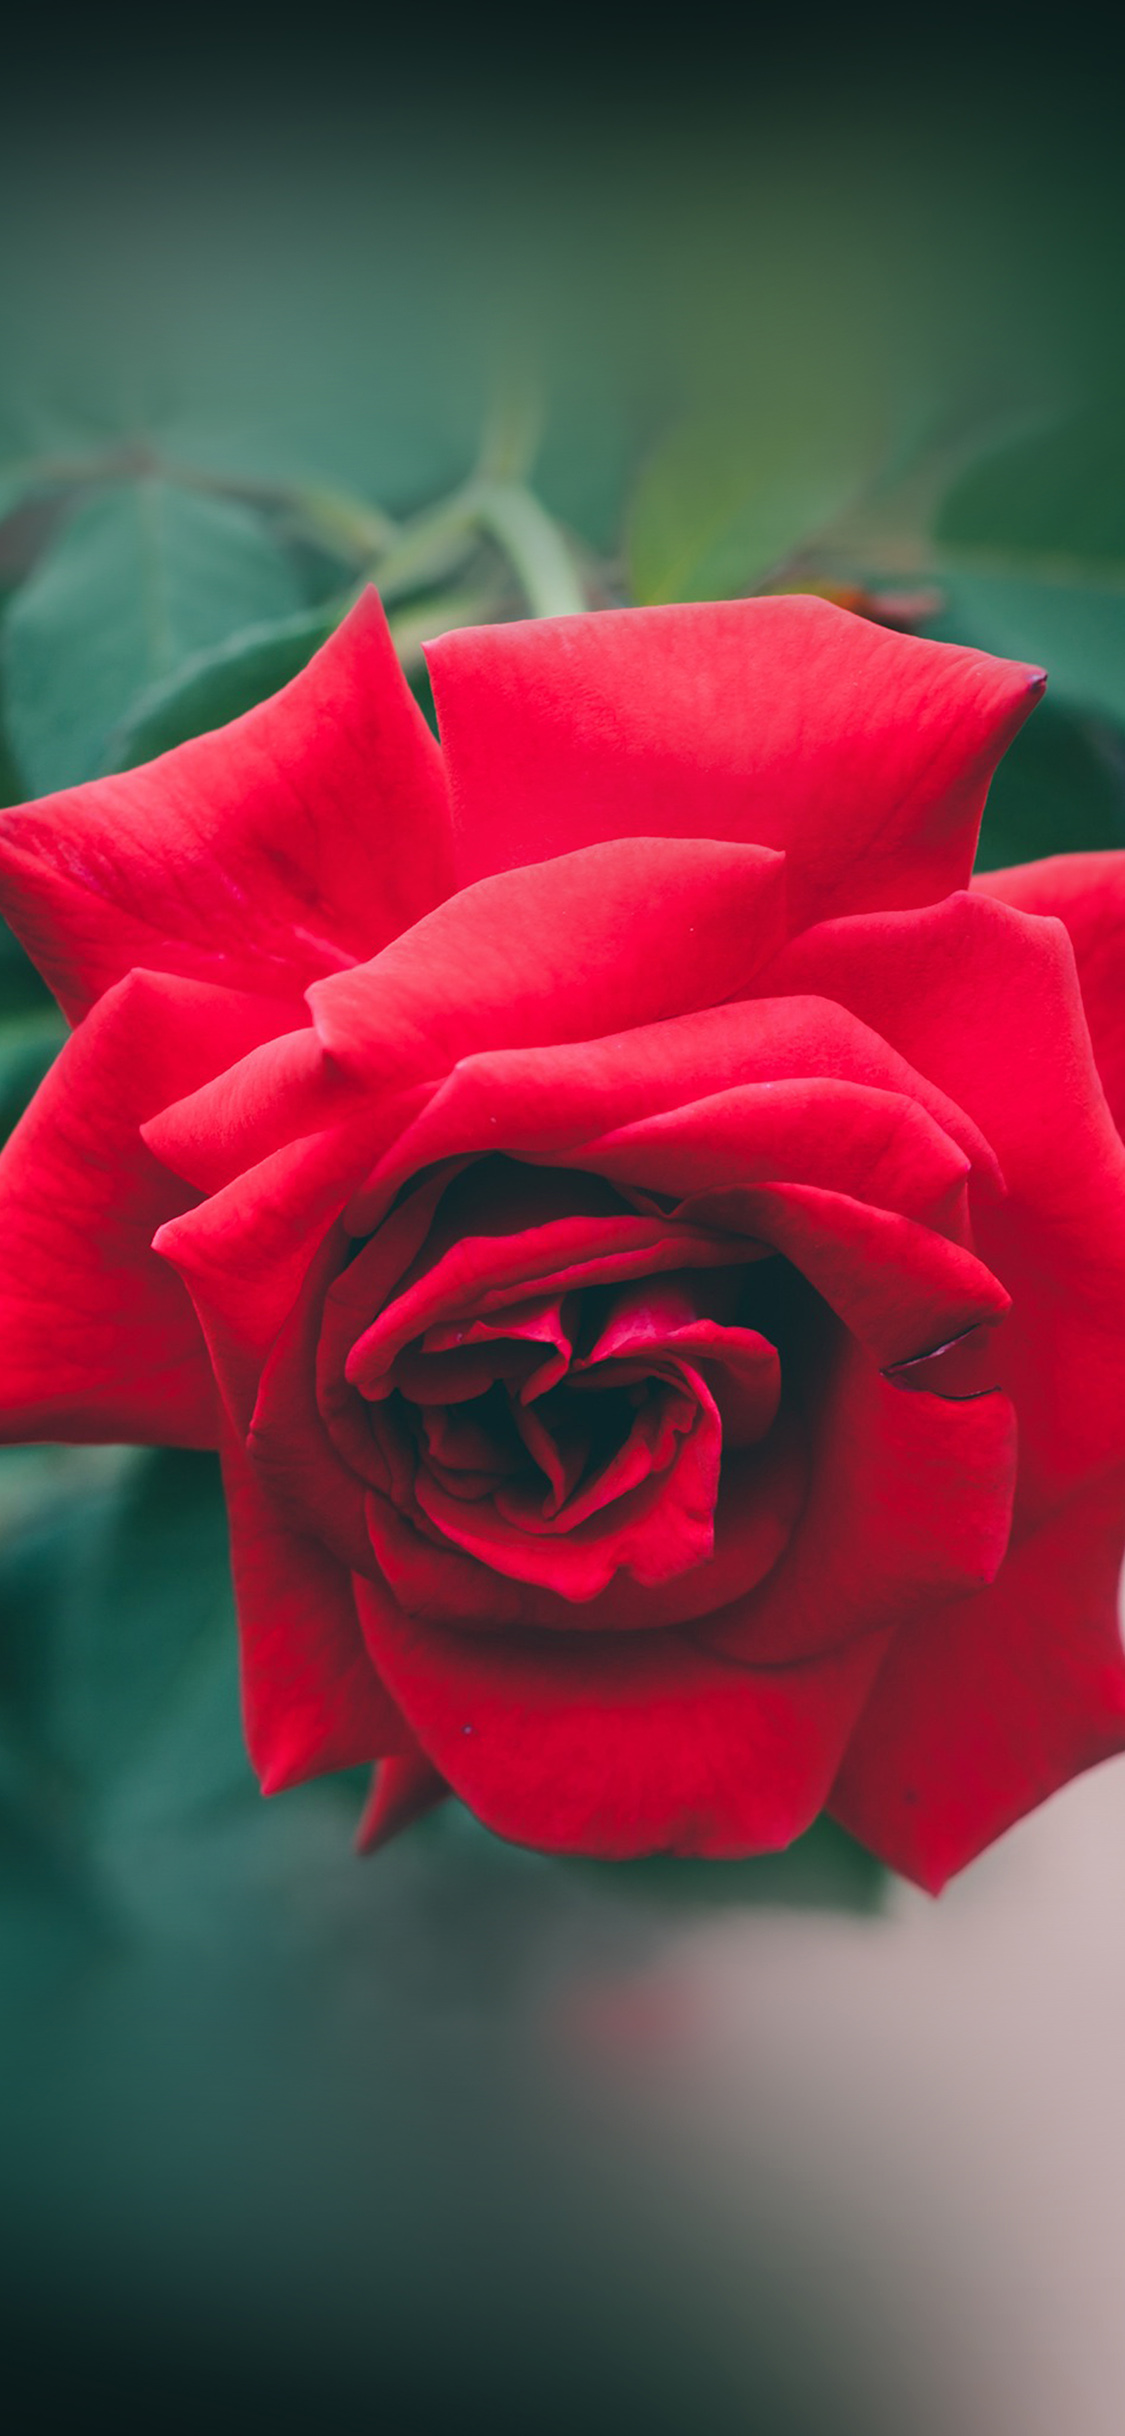 red rose wallpaper,flower,rose,garden roses,red,petal